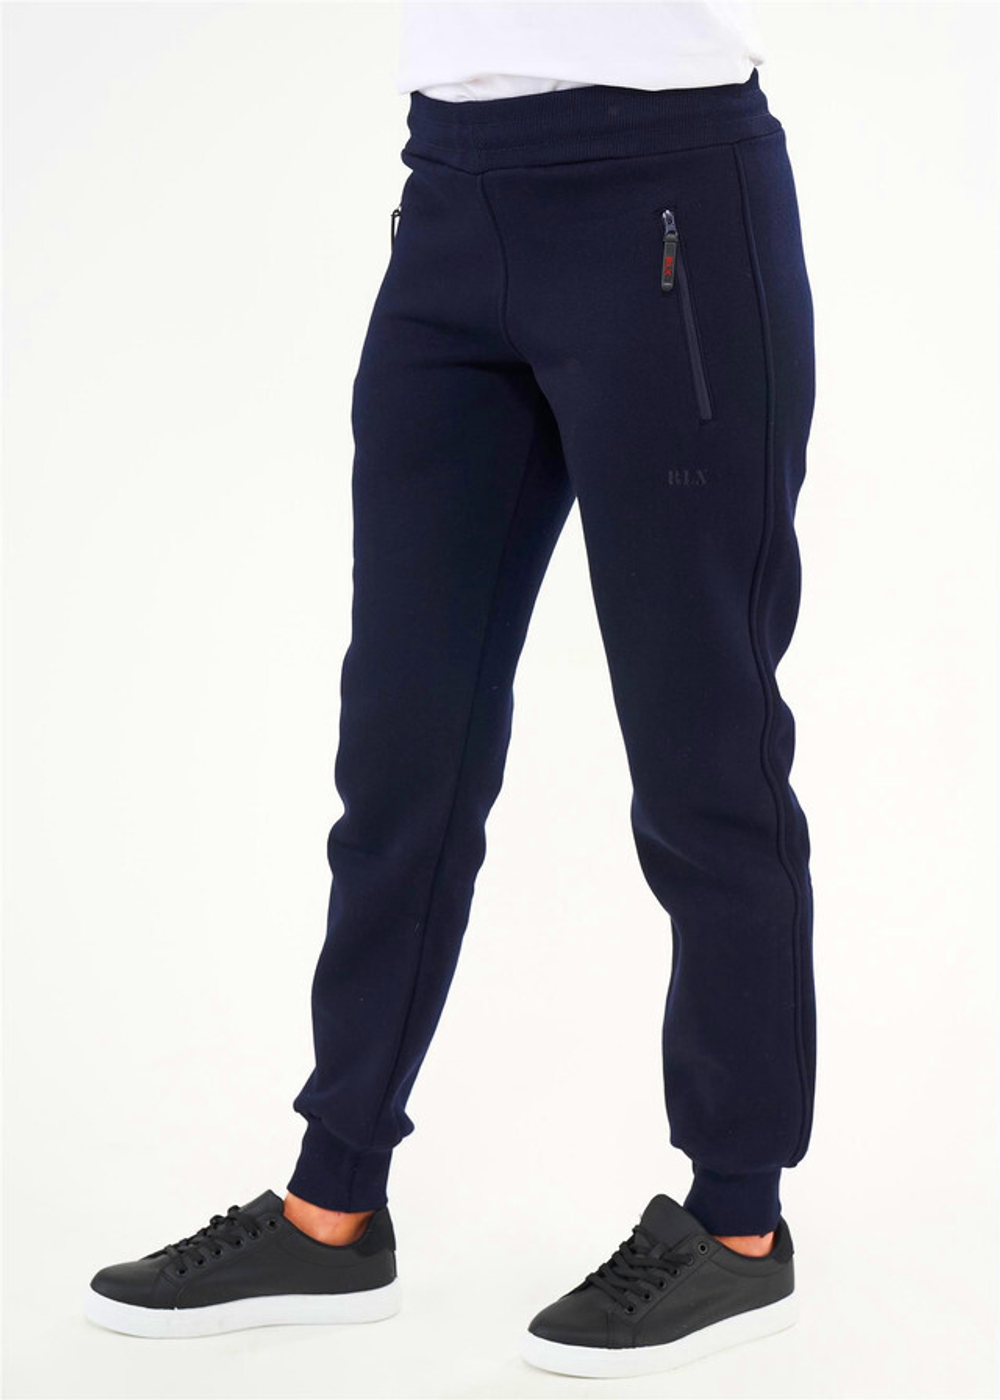 RELAX MODE / Спортивные штаны женские утепленные зимние джоггеры начес - 40069